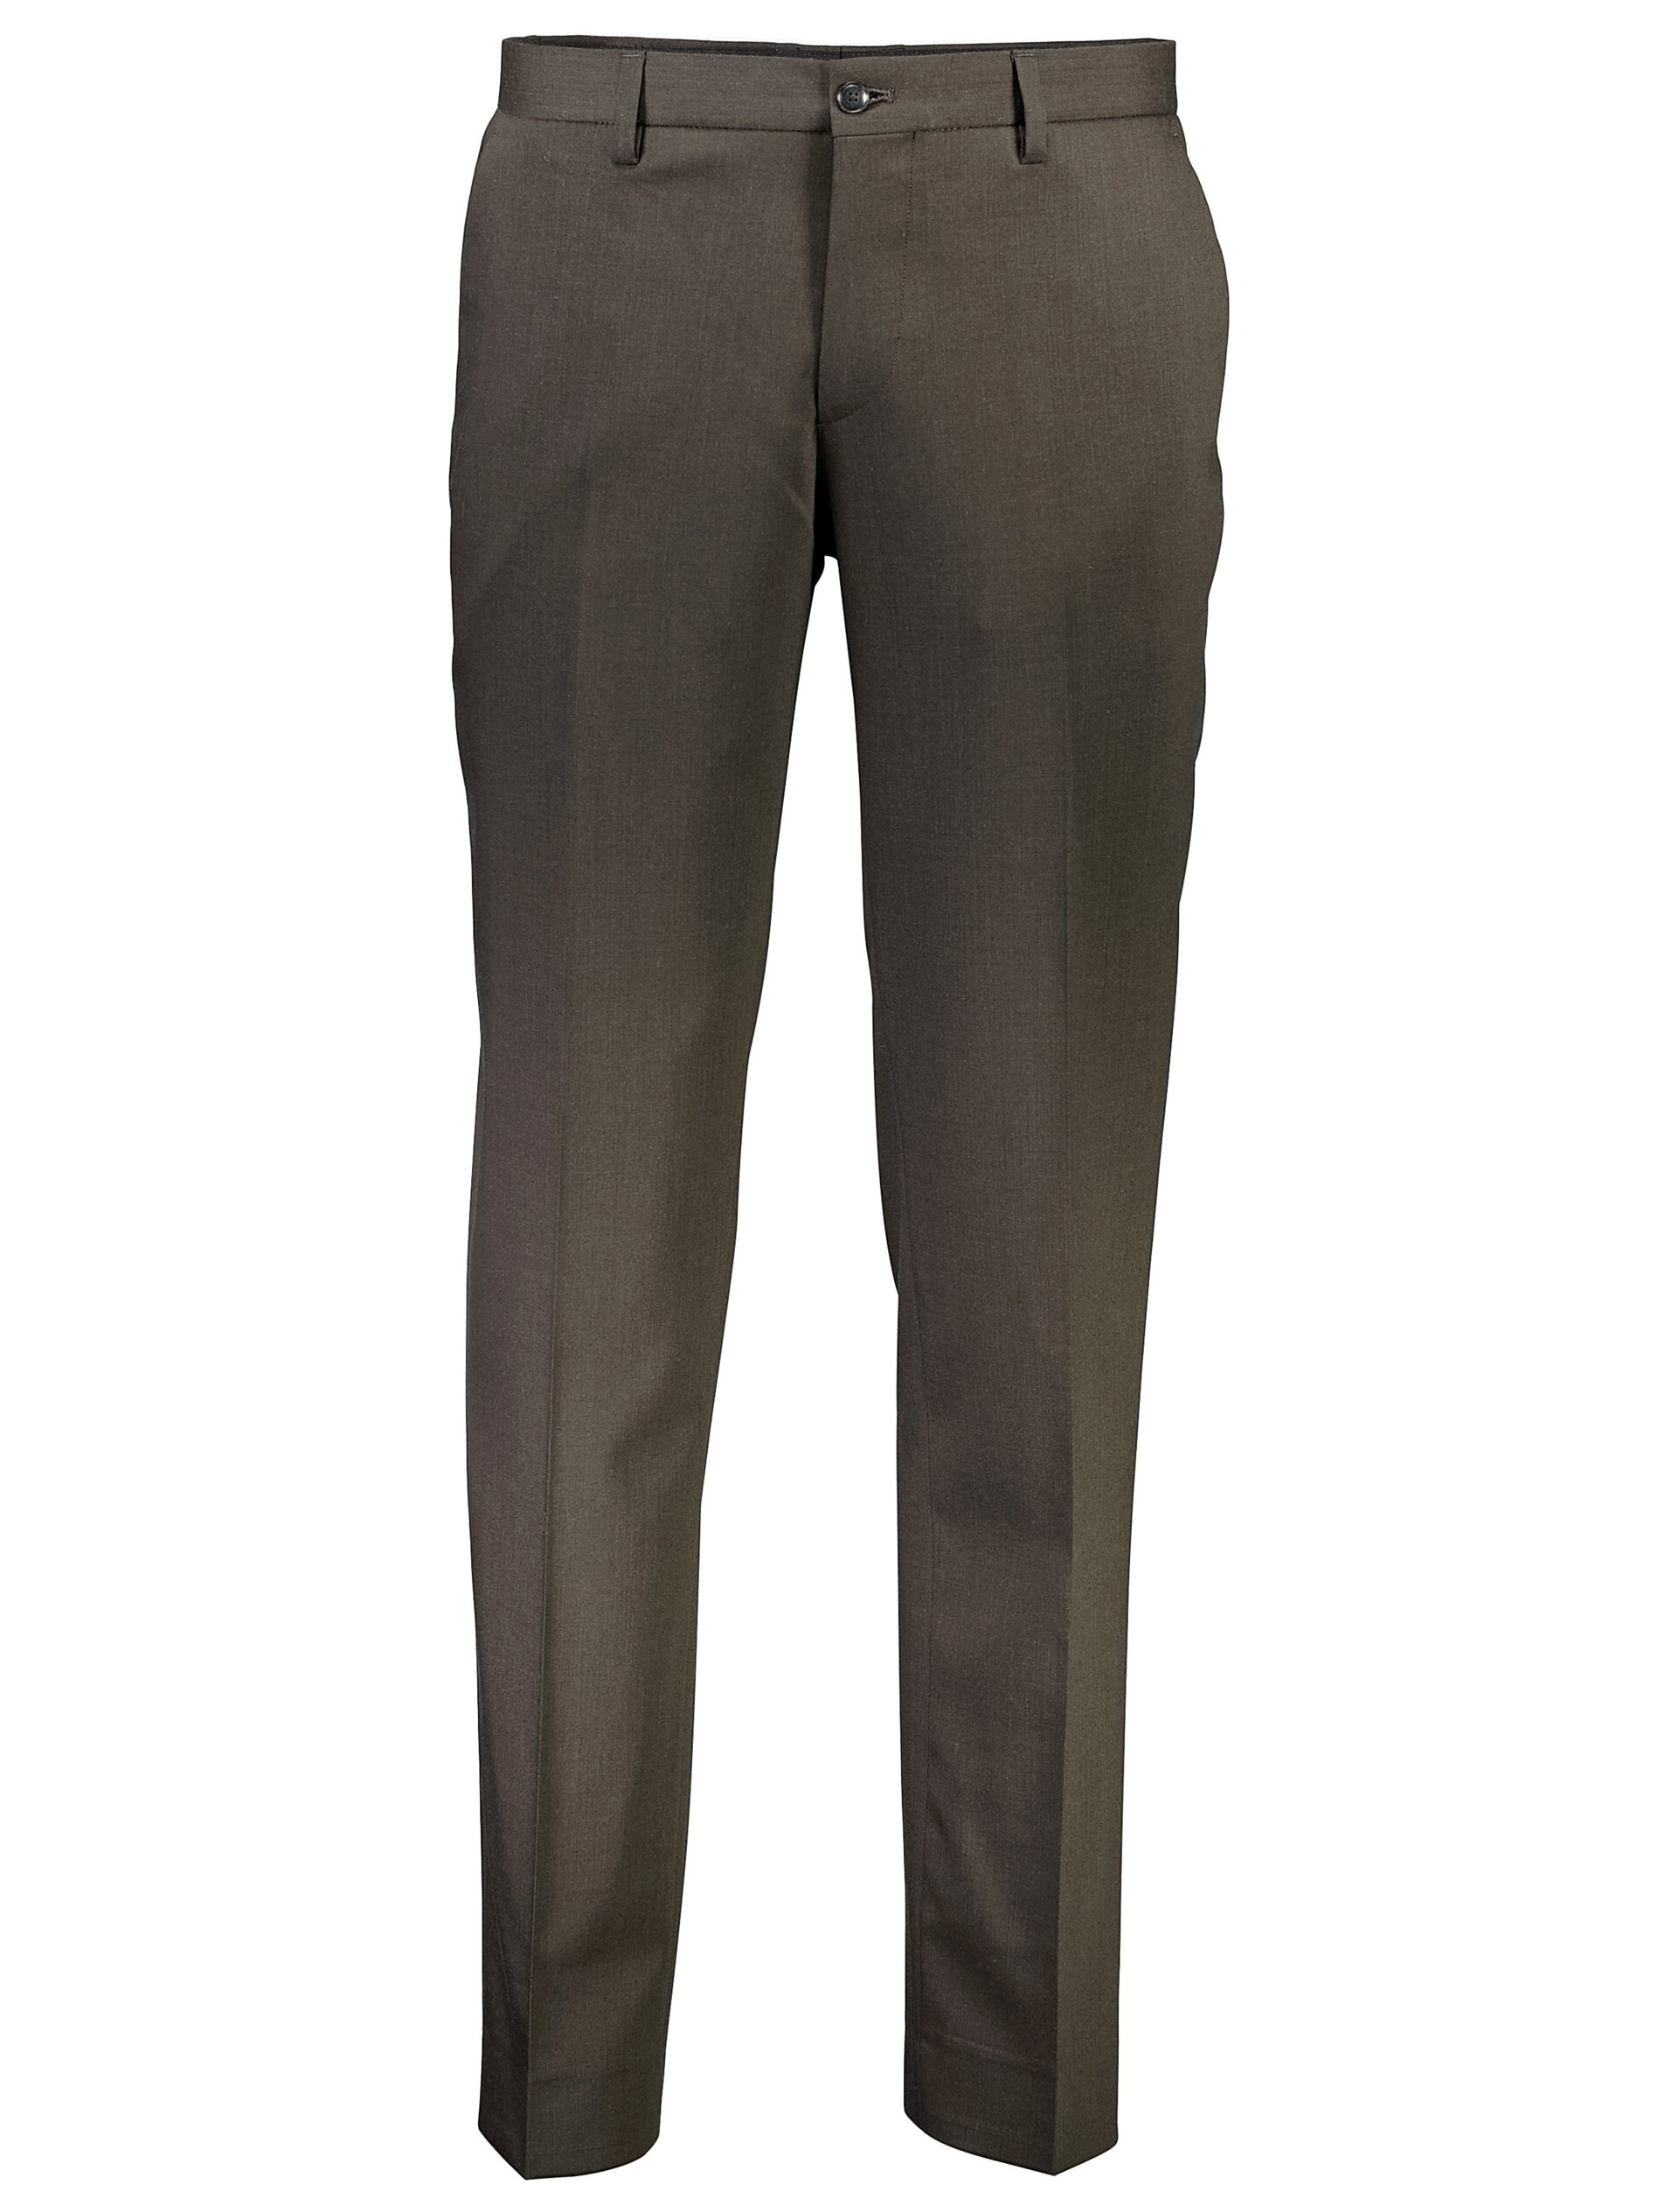 Lindbergh Suit pants brown / brown mel